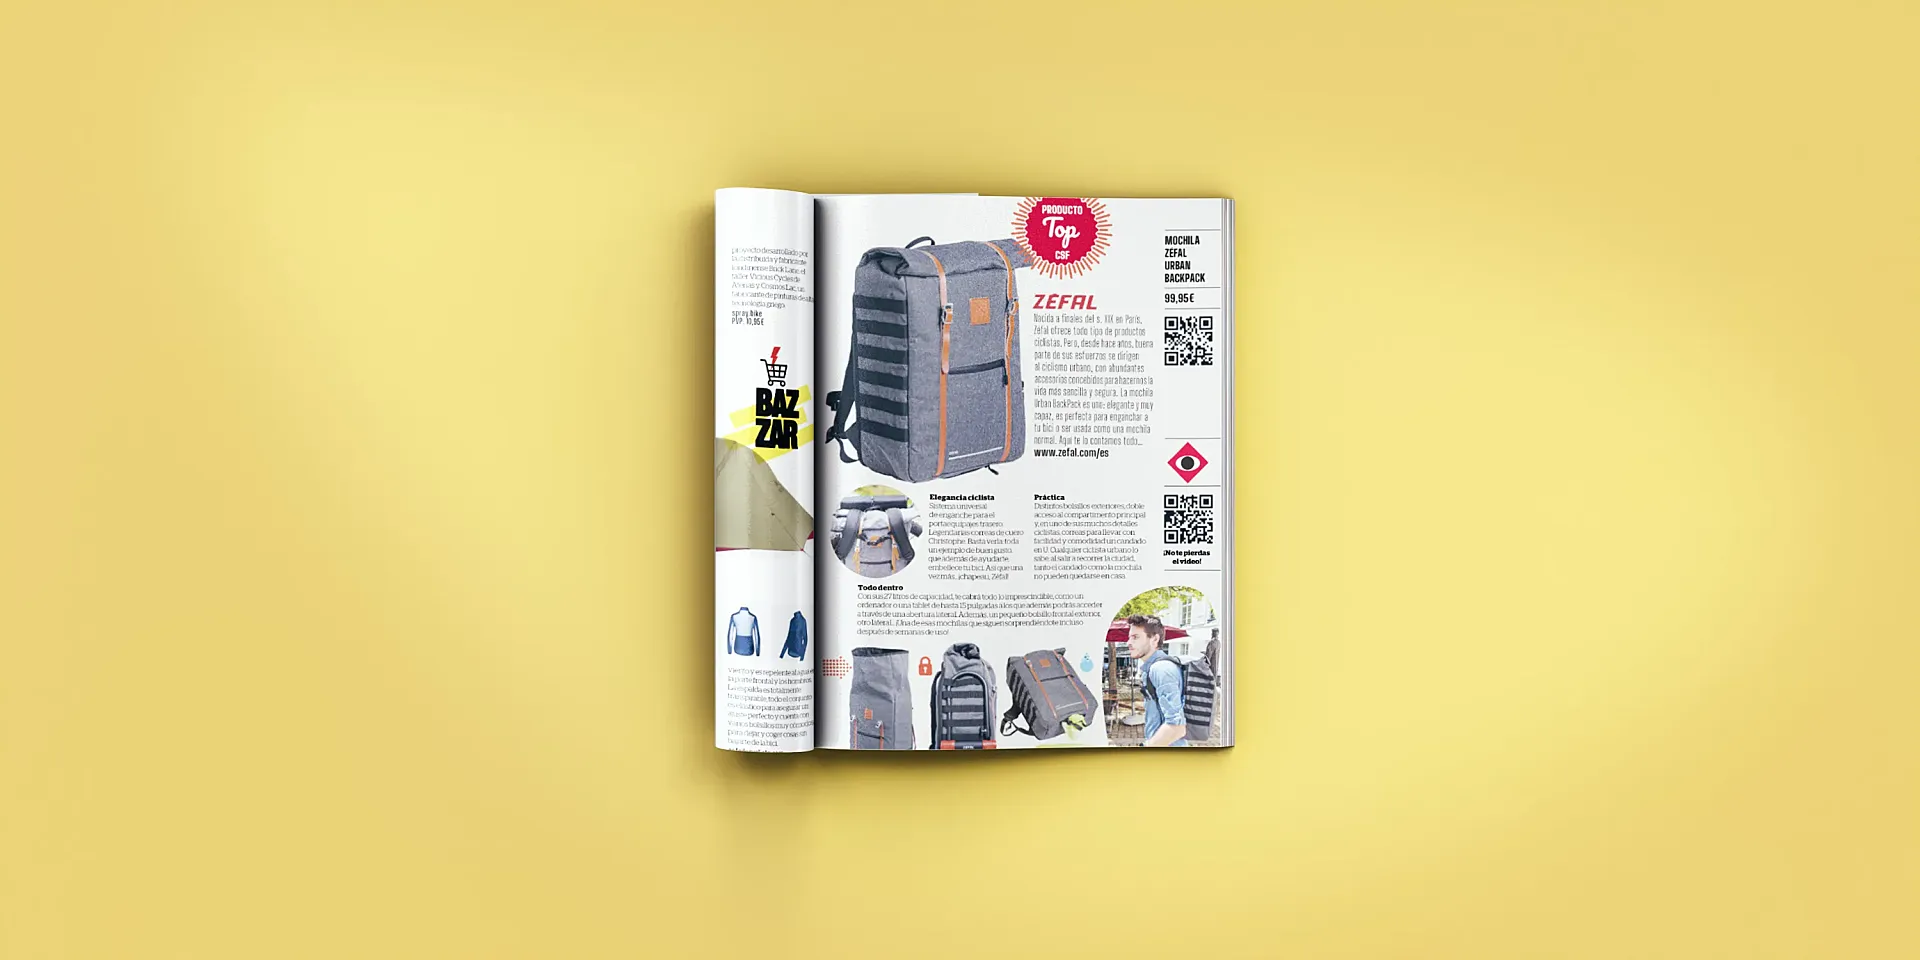 La mochila Zéfal Urban Backpack es uno de los tres 'Productos a Fondo' en Ciclosfera #39.